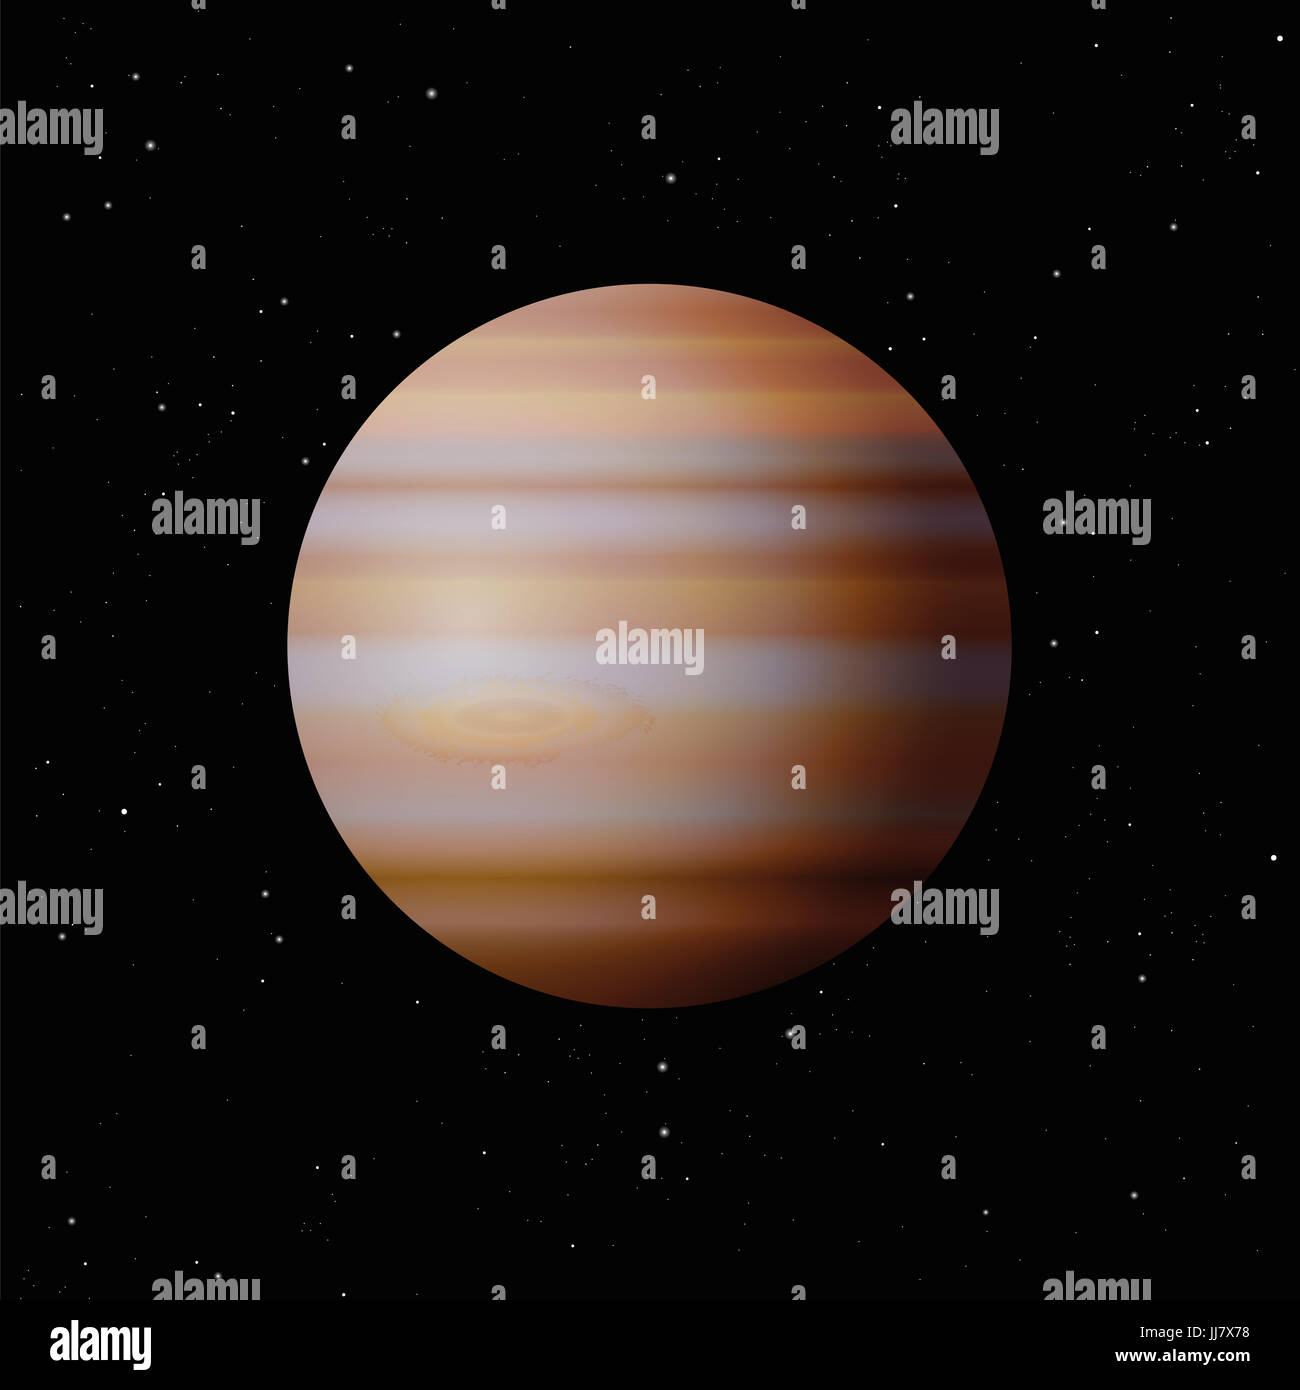 Planeta Júpiter con el típico gran lugar - el planeta más grande del Sistema Solar - Ilustración de la noche estrellada galaxy fondo negro. Foto de stock